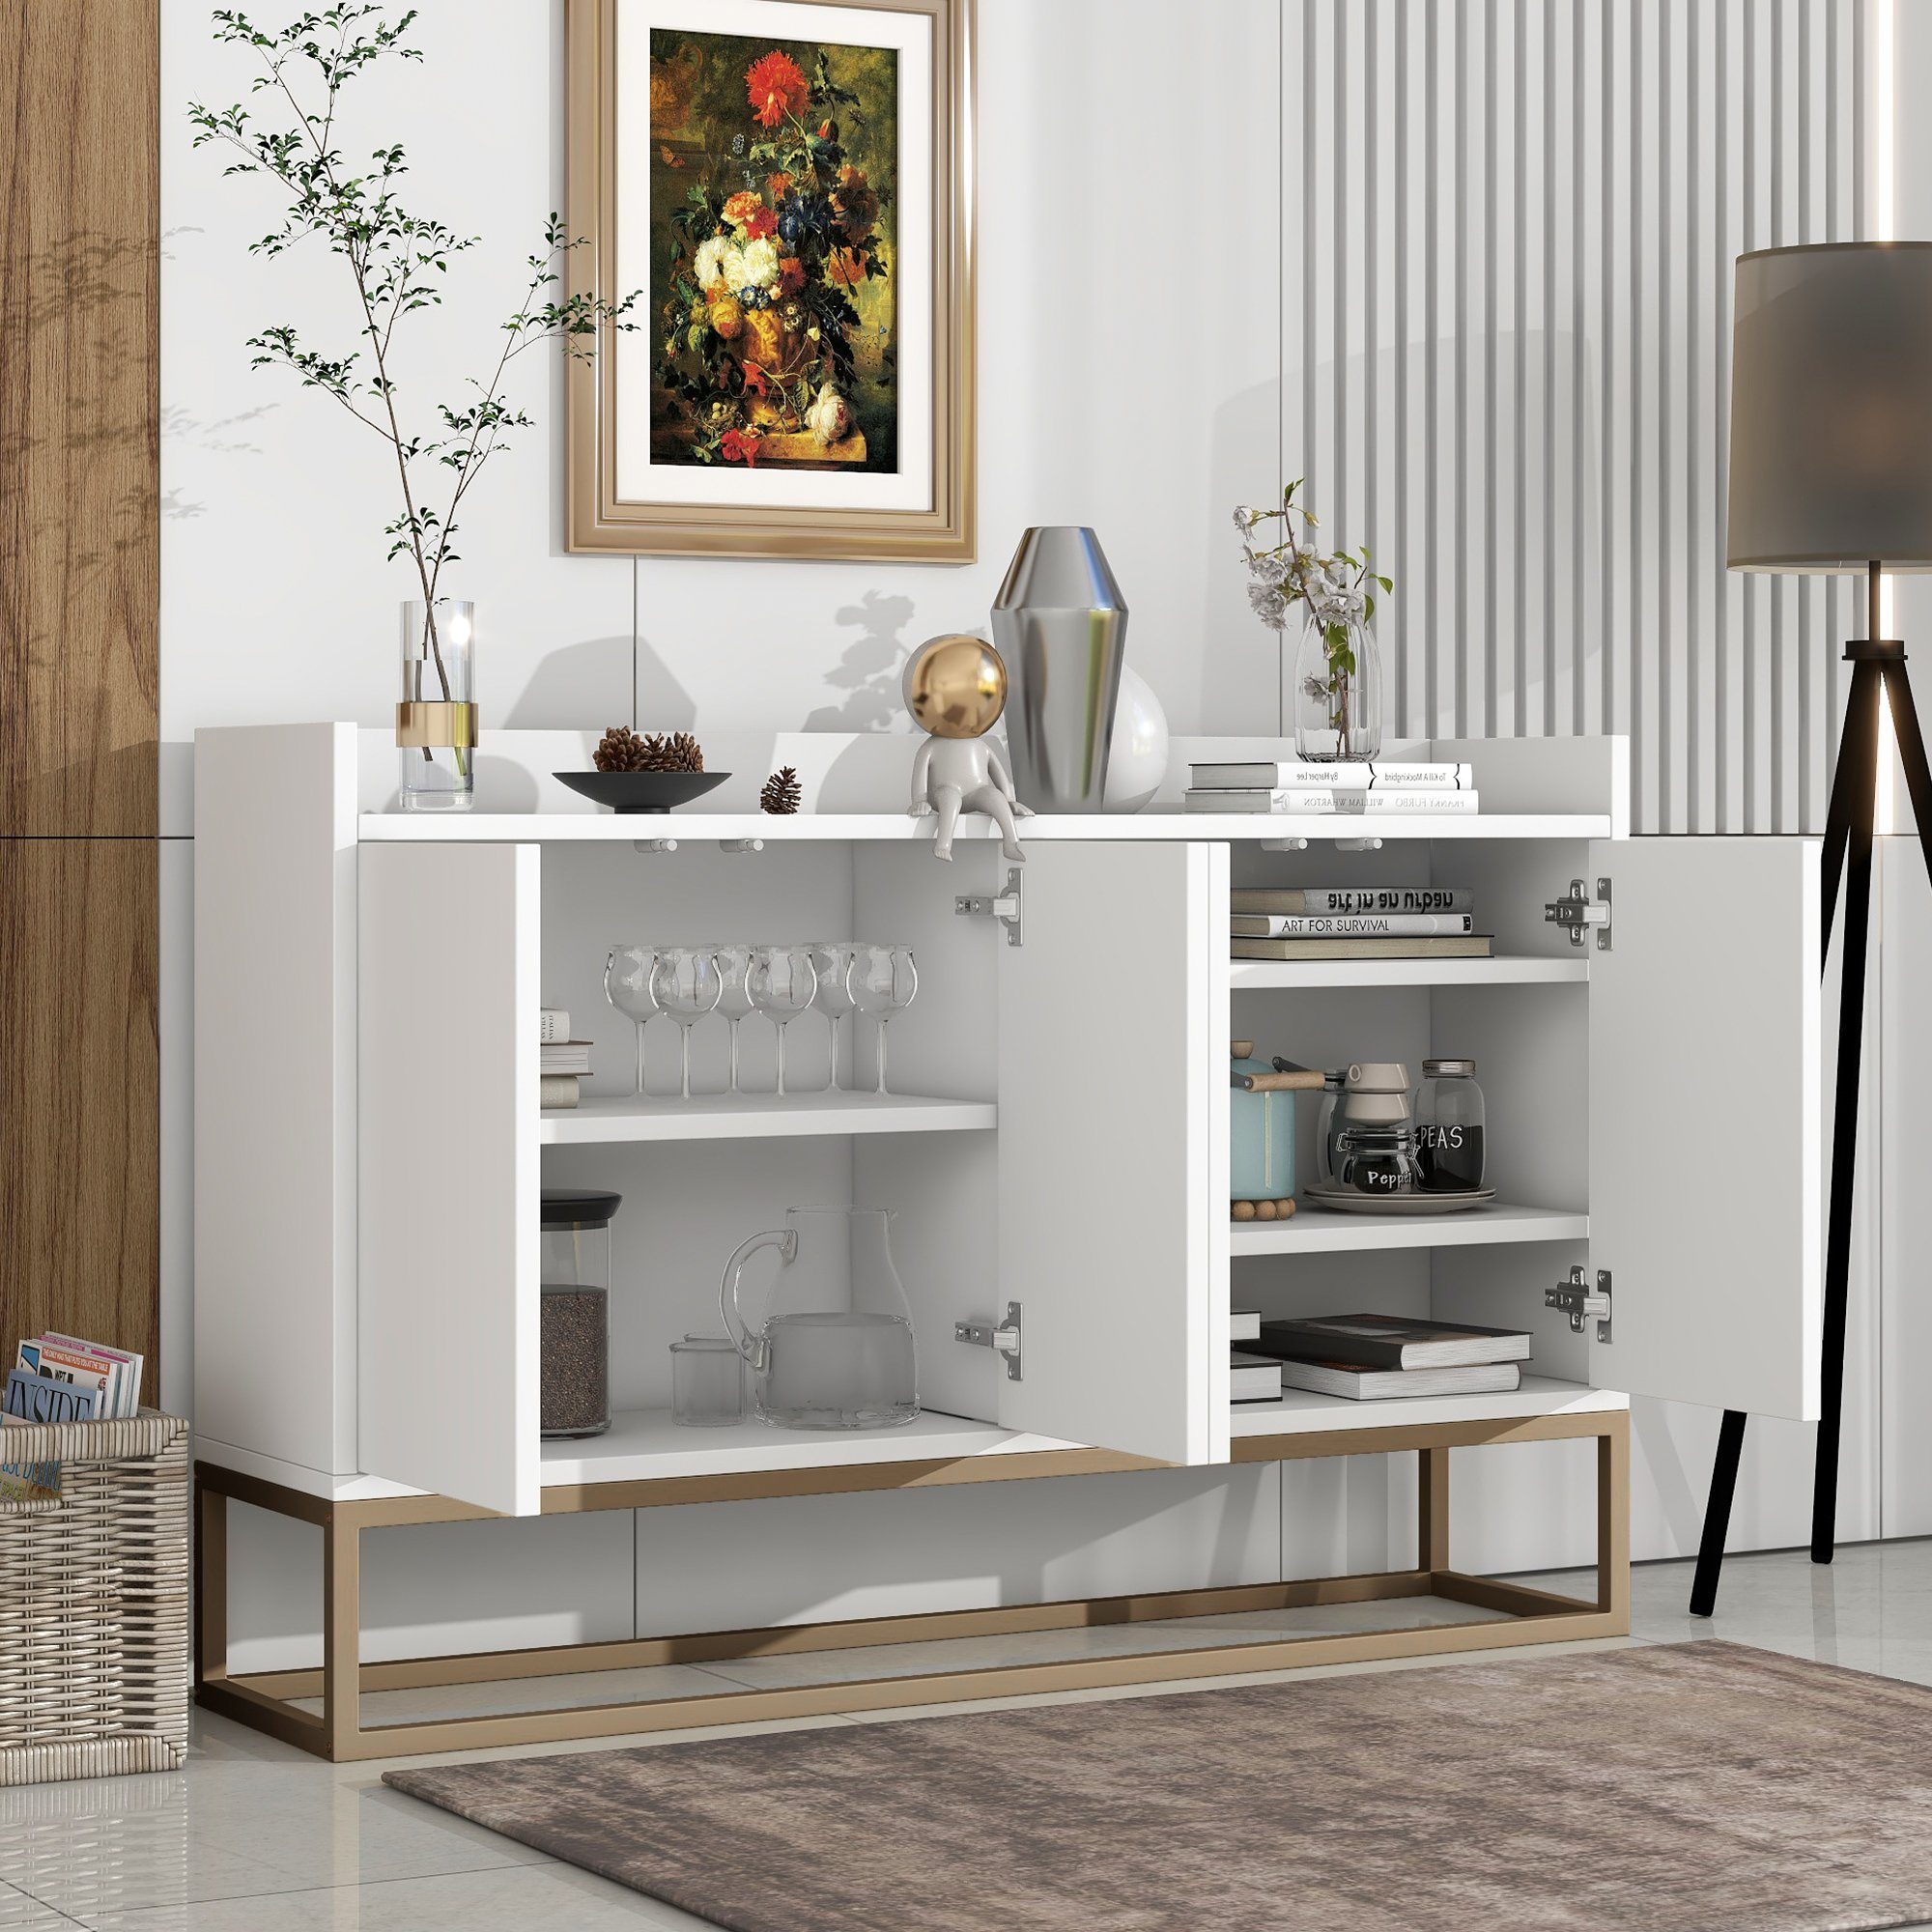 OKWISH Sideboard Anrichte, Modernes Küchenschrank im minimalistischen Stil 4-türiger (griffloser Buffetschrank für Esszimmer, Wohnzimmer, Küche) weiß